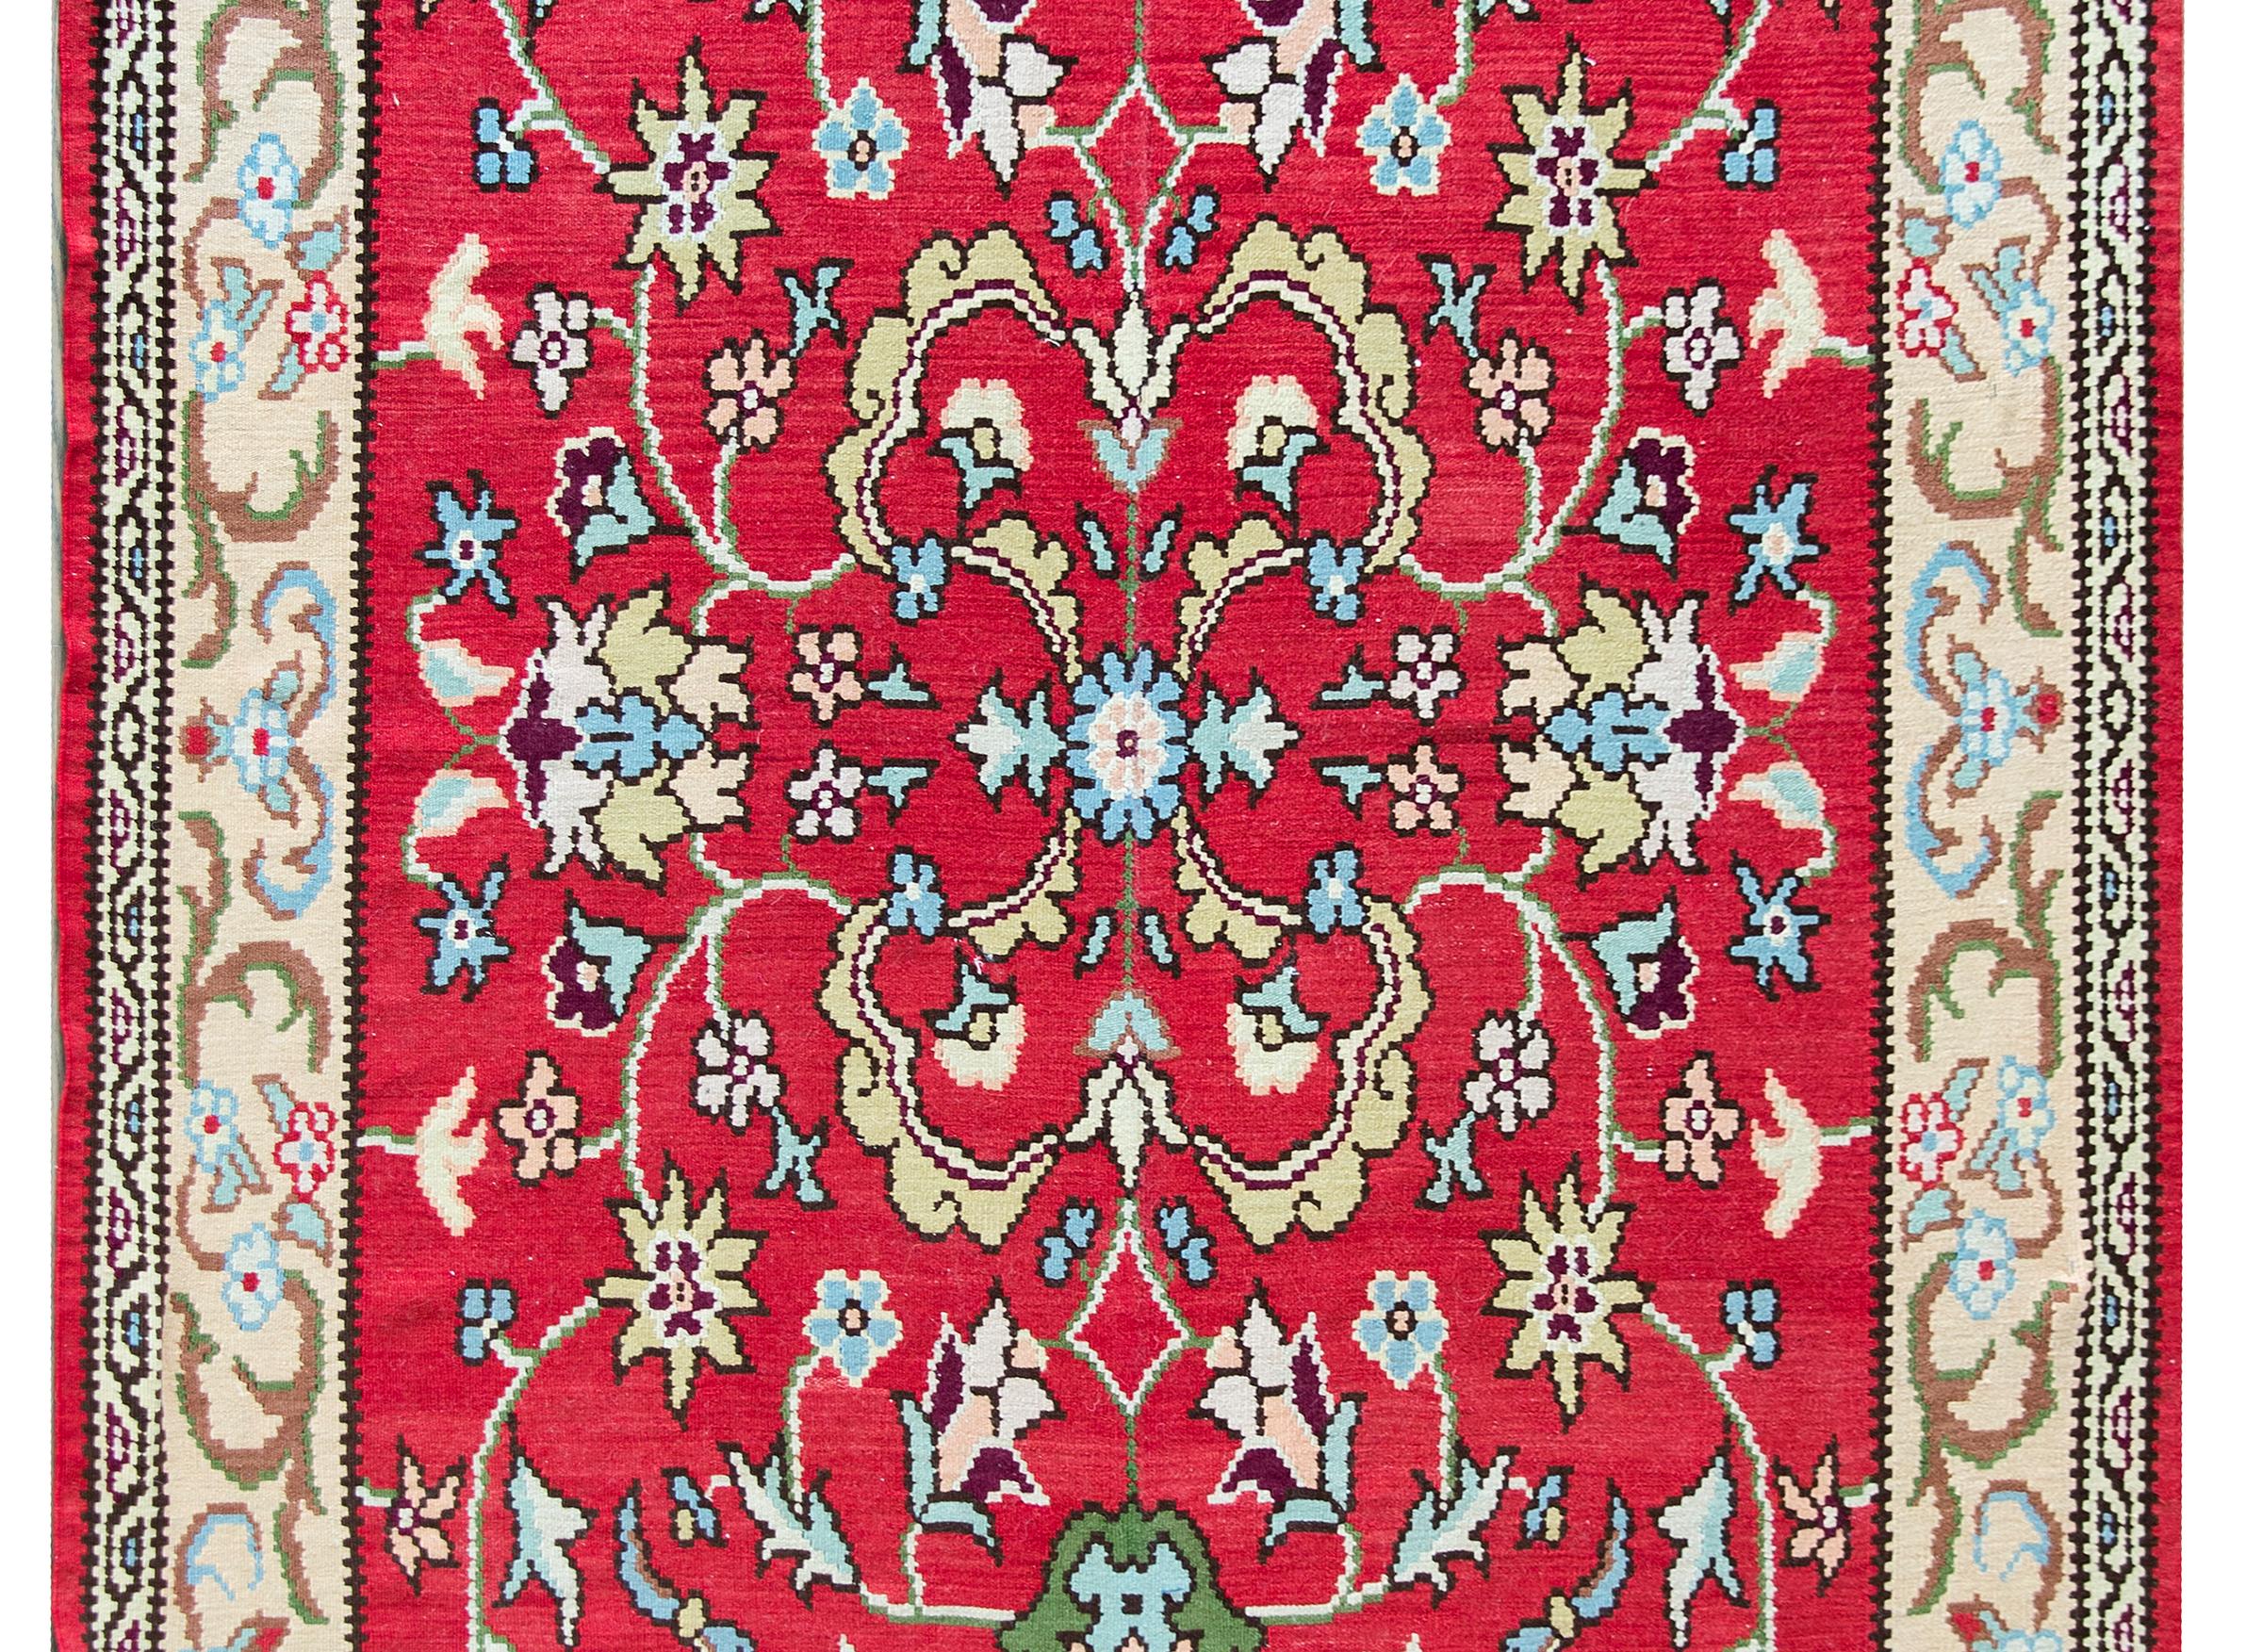 Ein türkischer Kelimteppich im Vintage-Stil mit einem wunderschönen, gespiegelten Blumenmuster in hellem und dunklem Indigo, Grün, Gold und Braun, das sich vor einem kräftigen karminroten Hintergrund abhebt und von einer schönen, mit Ranken und